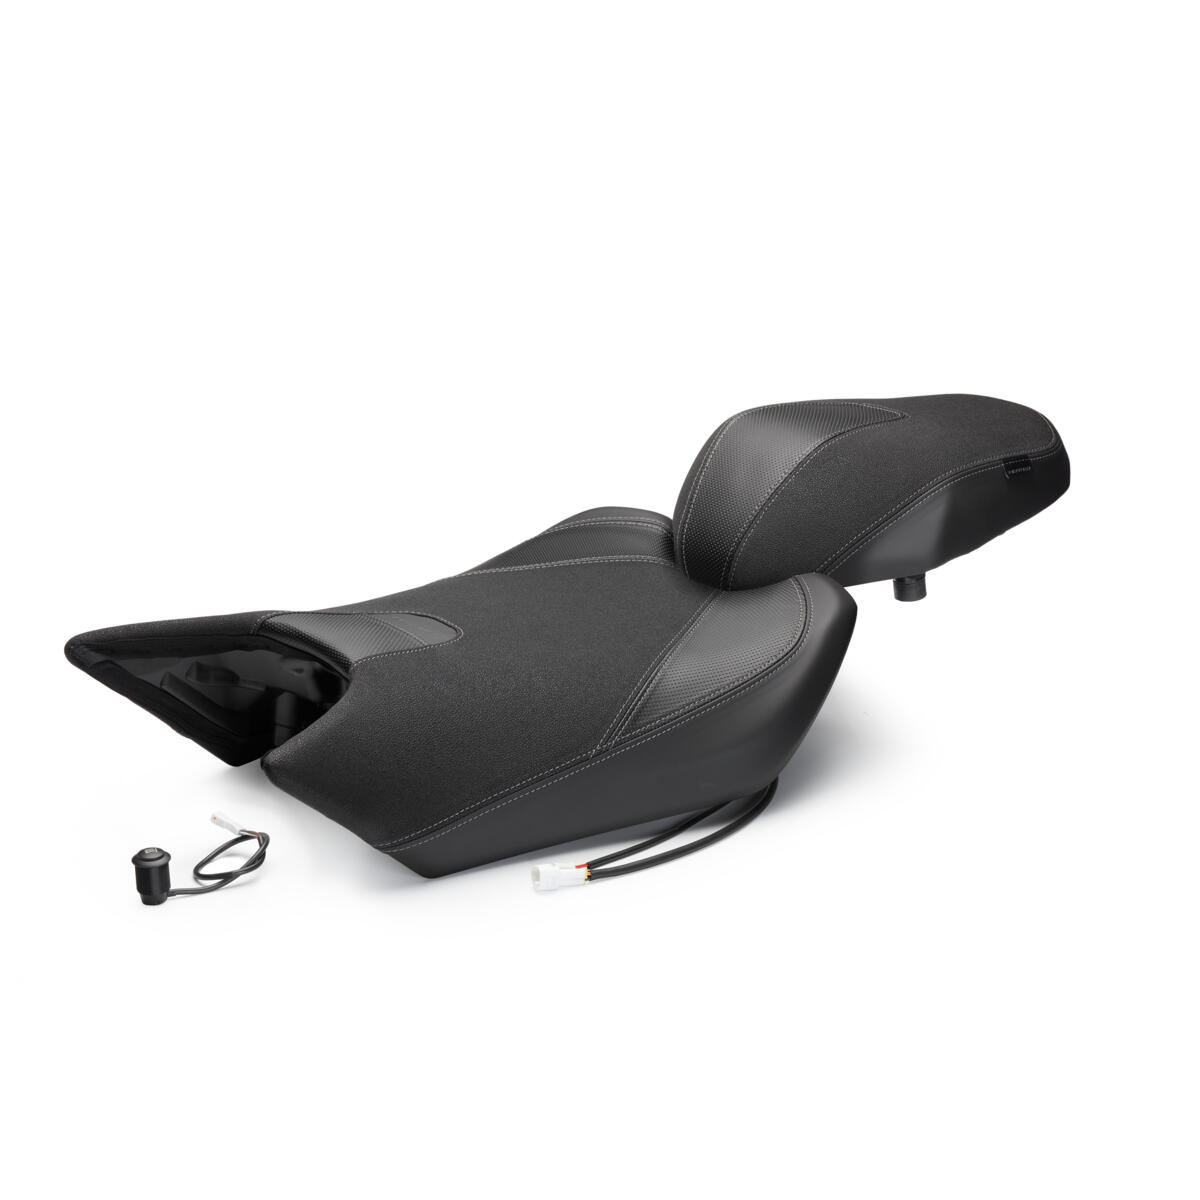 Elegante assento aquecido com design exclusivo, para substituir o original e proporcionar mais conforto em viagens longas e tempo frio.